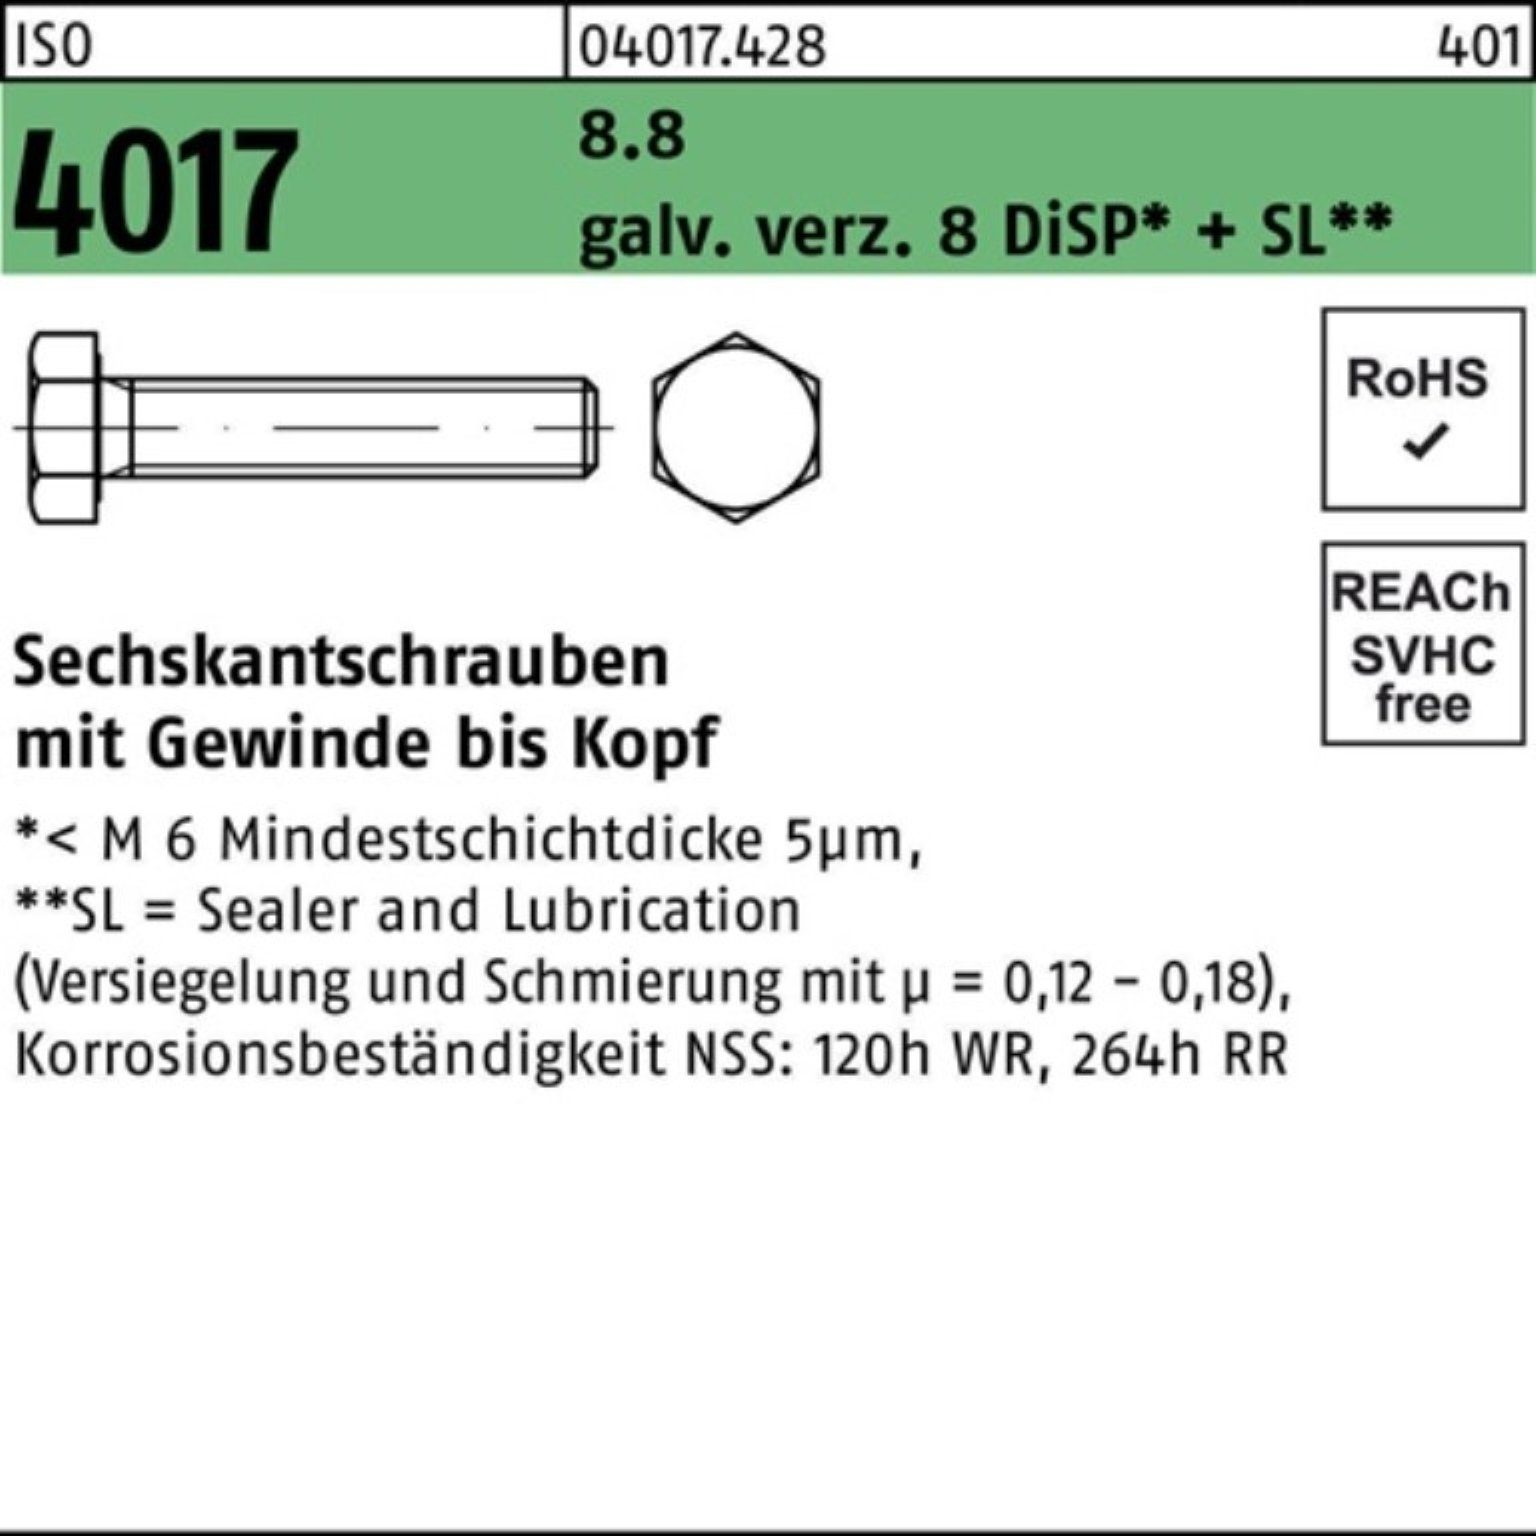 ISO DiSP galv.verz. Bufab M20x 8 Sechskantschraube Sechskantschraube 100er 8.8 30 VG Pack 4017